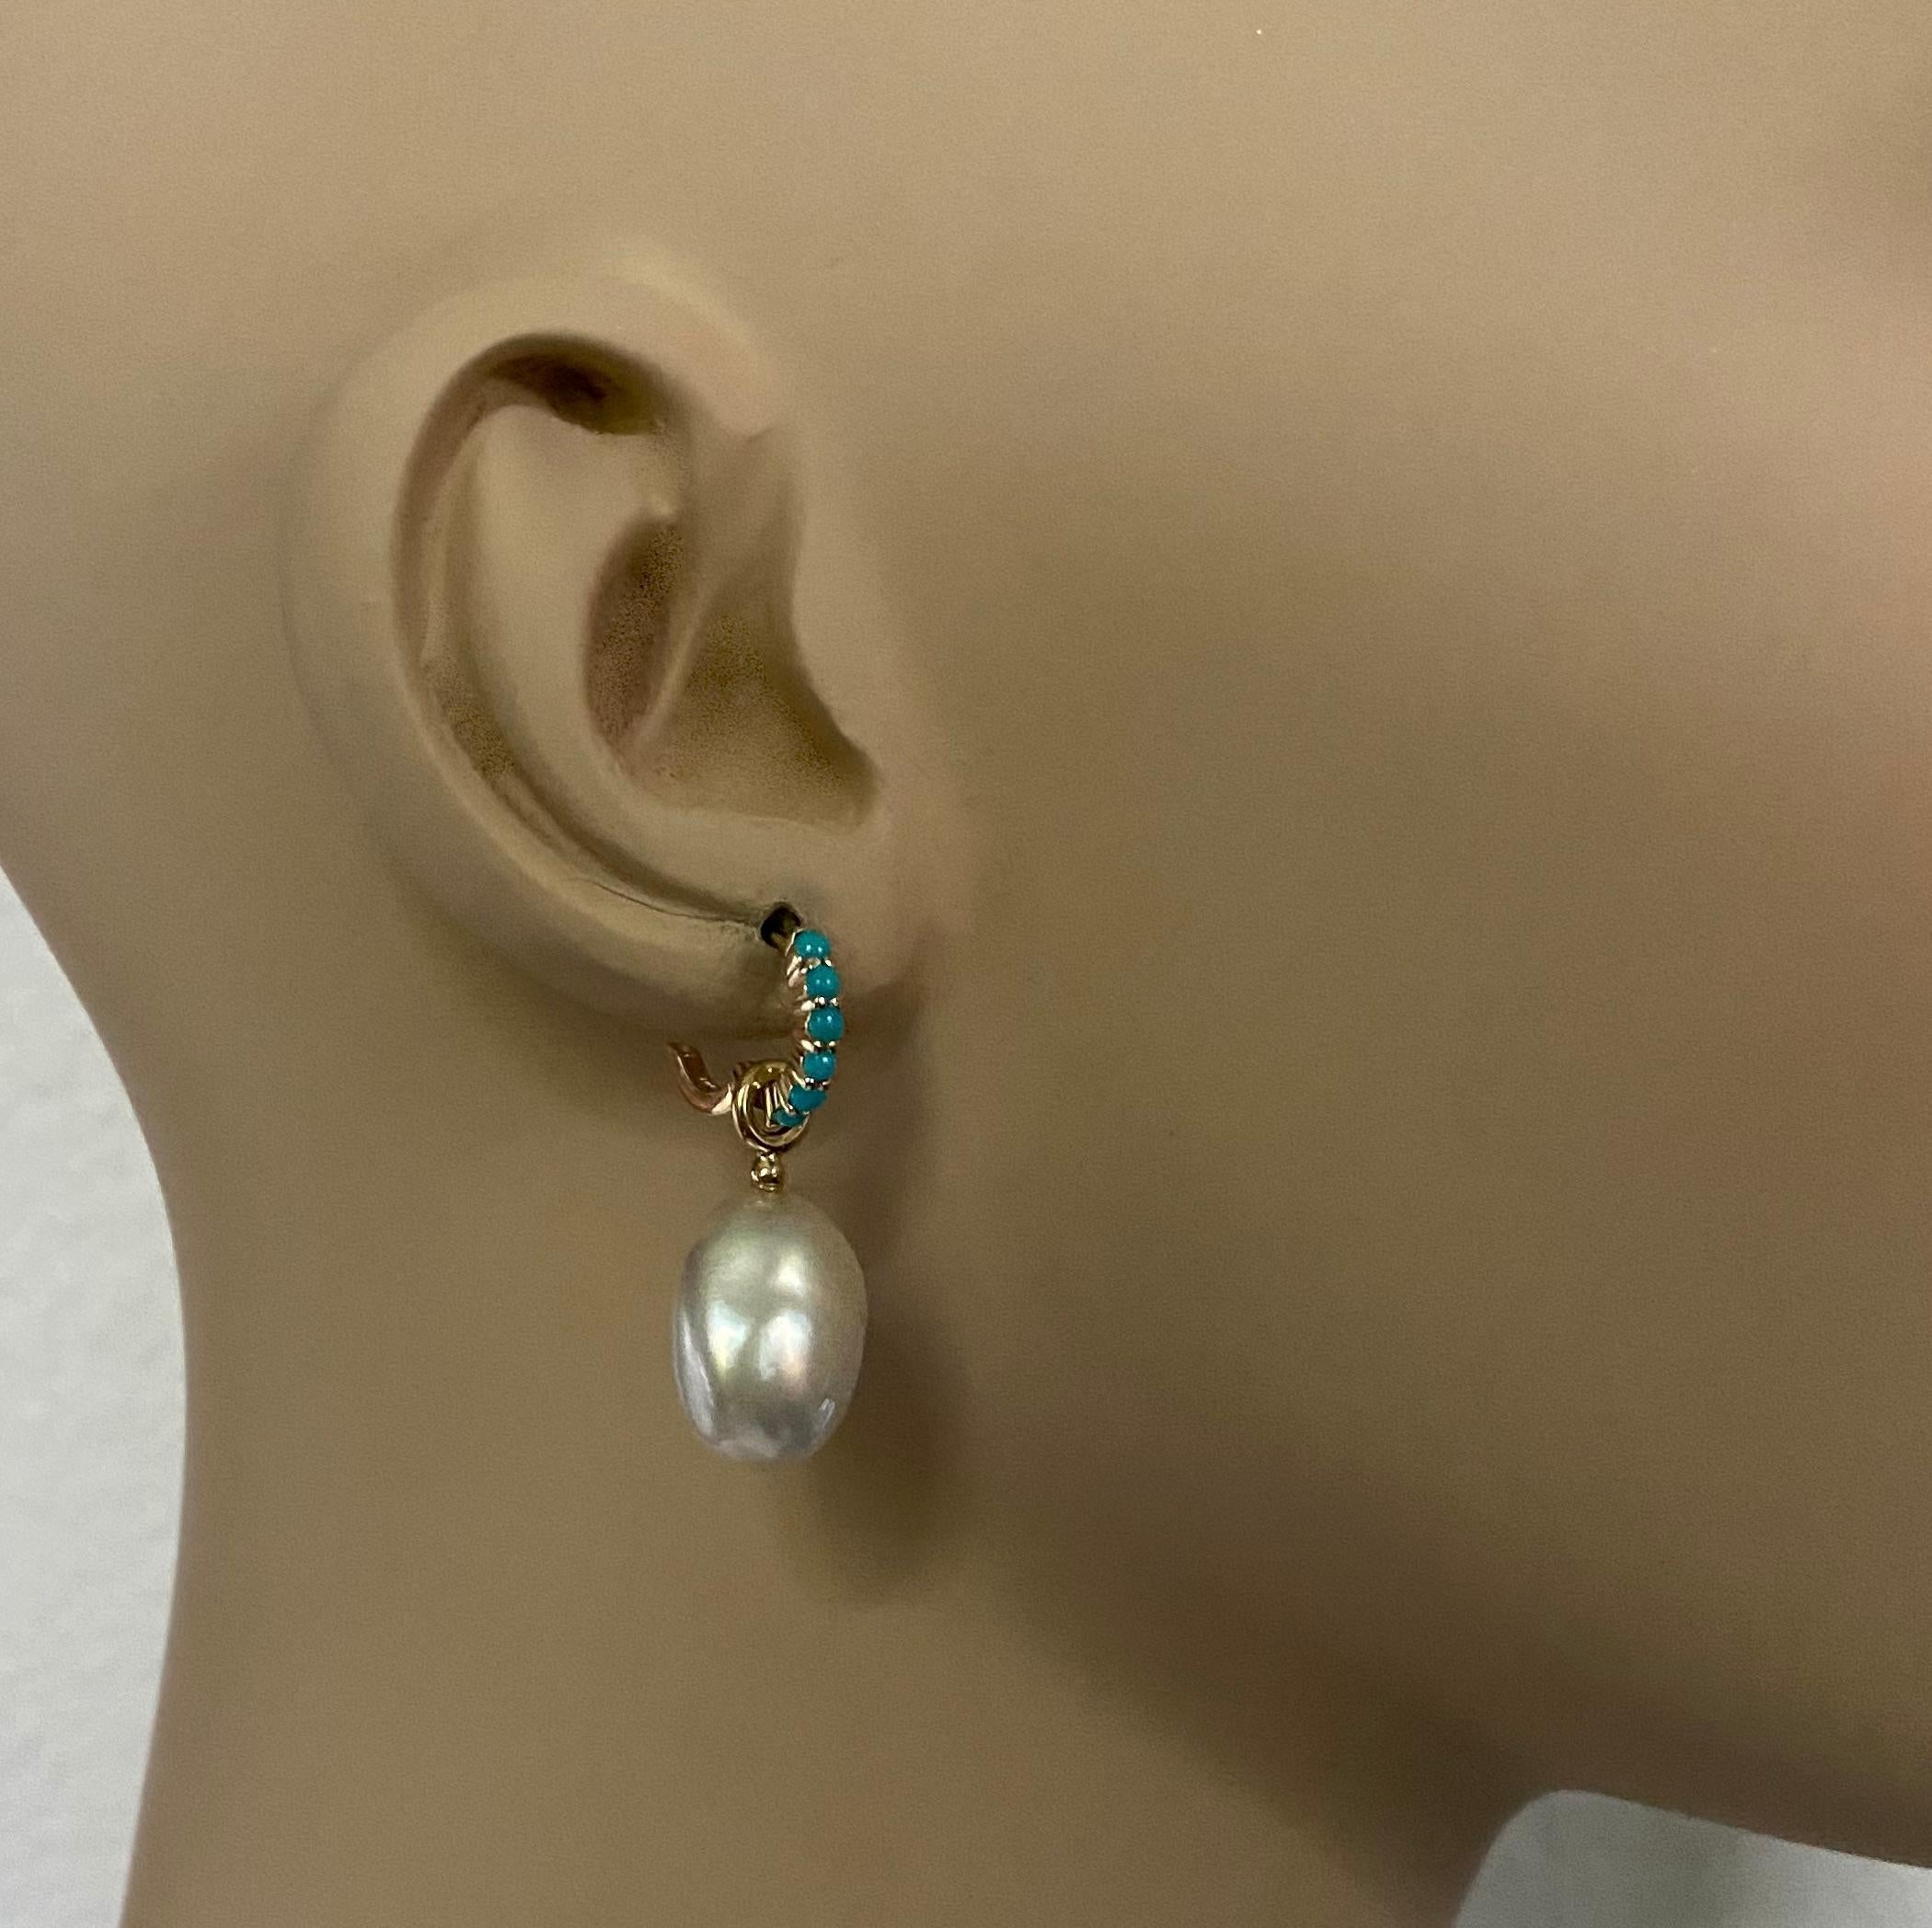 Des perles des mers du Sud Paspaley sont associées à des anneaux de style « huggie » turquoise dans ces boucles d'oreilles quintessence.  Les perles sont de couleur blanc pur, sans imperfections ni taches négligées, et de forme irrégulière comme on